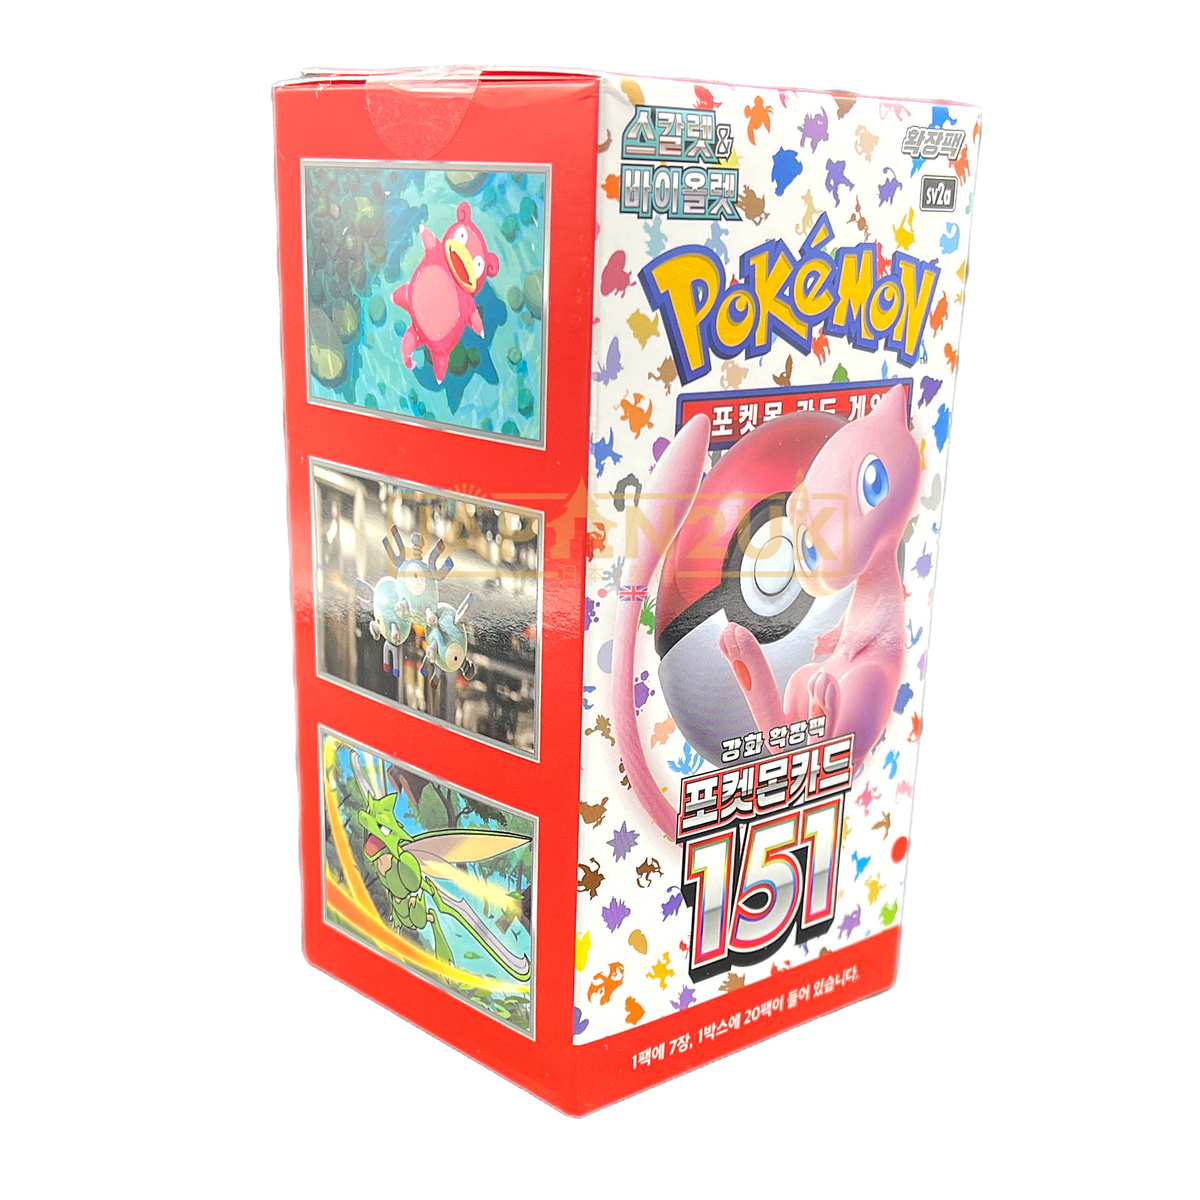 Coffret Pokémon 151 Starter File Set - SV2A Japonais